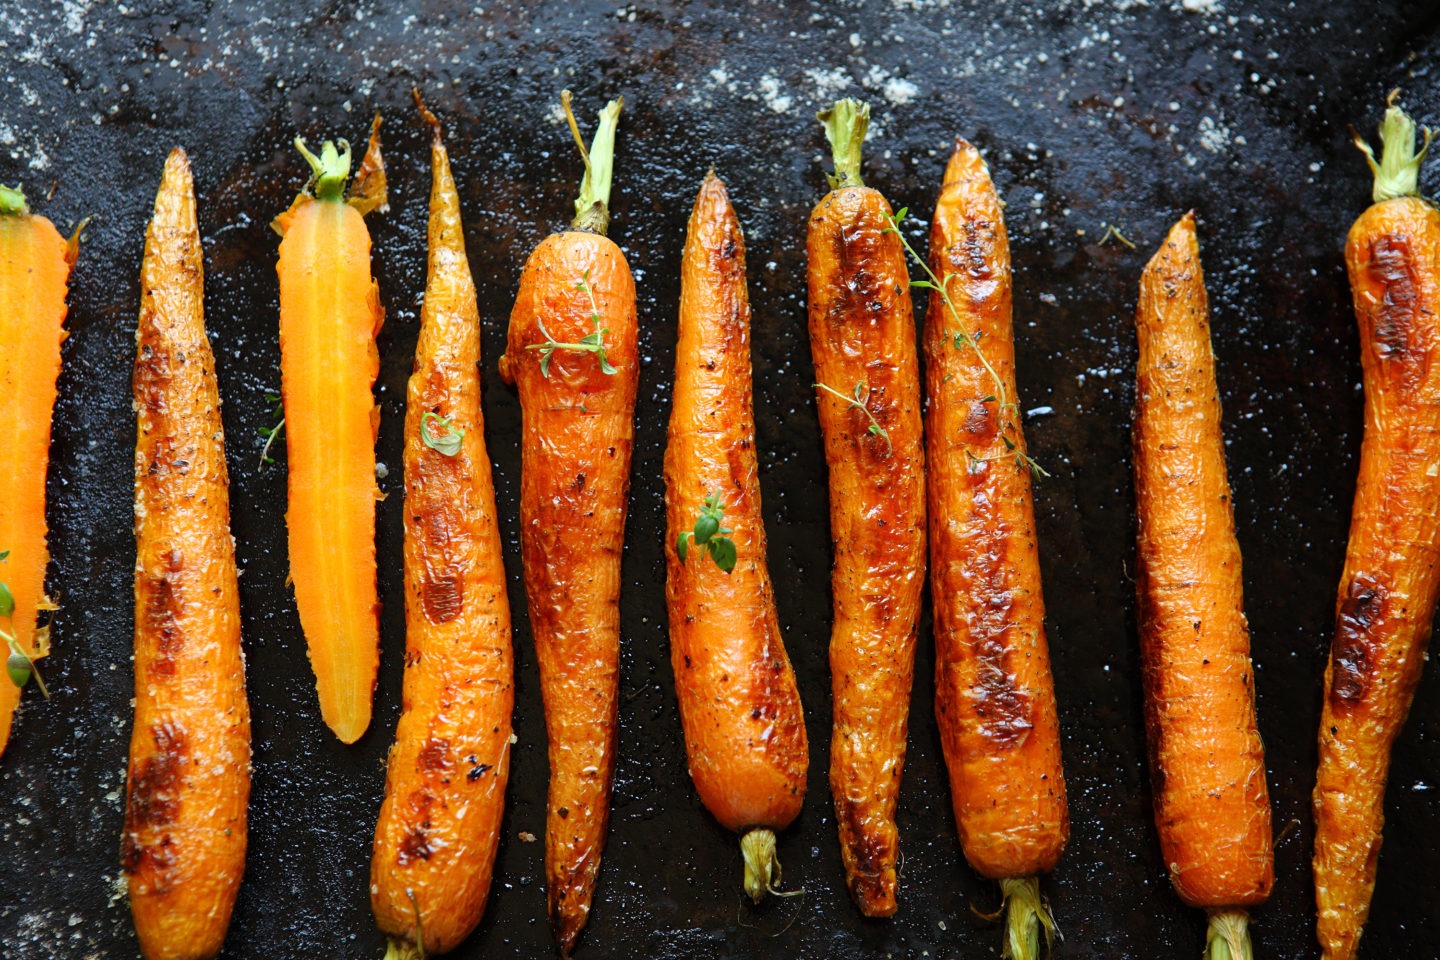 Топ-8 самых простых и вкусных рецептов морковного торта с фото иллюстрациями